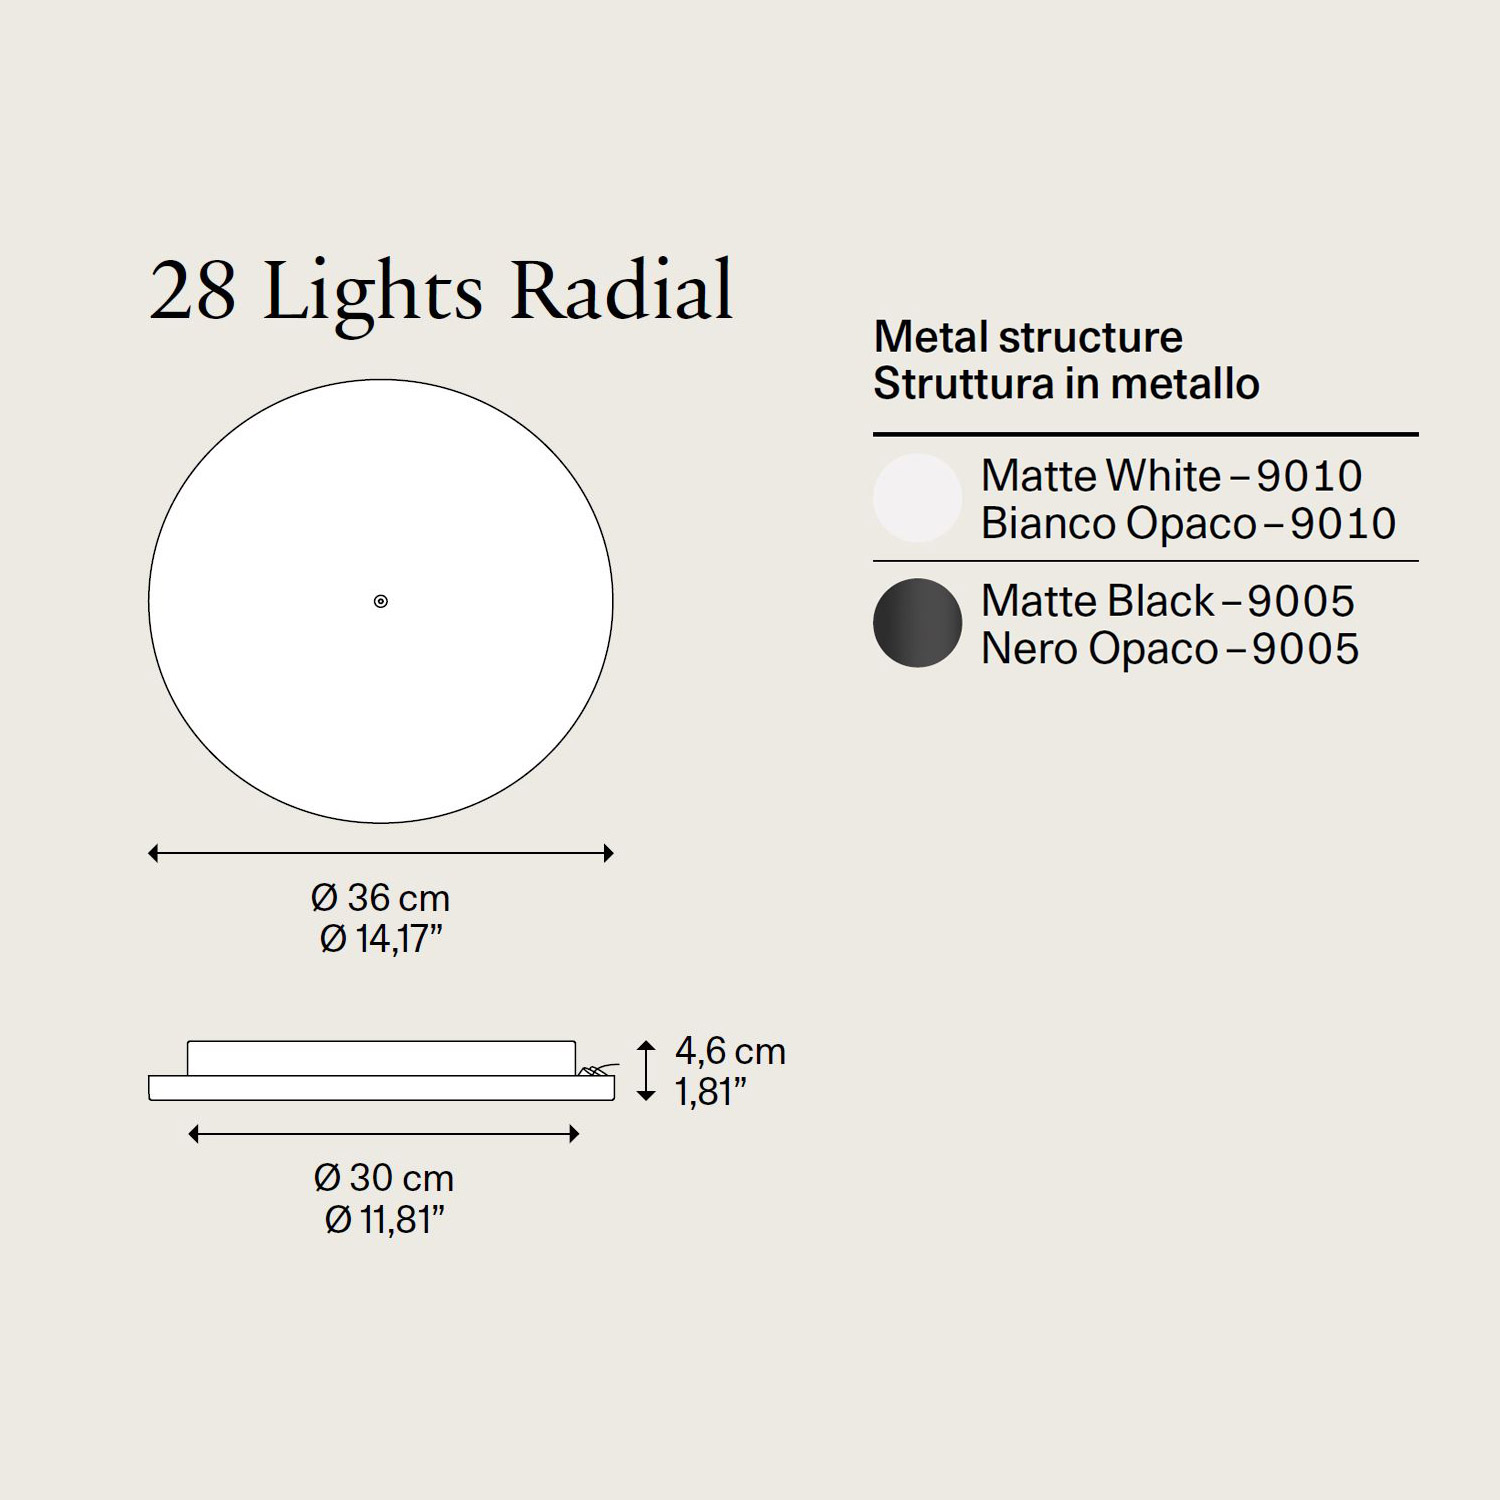 13-28 Lights Radial Deckenrosette von Lodes